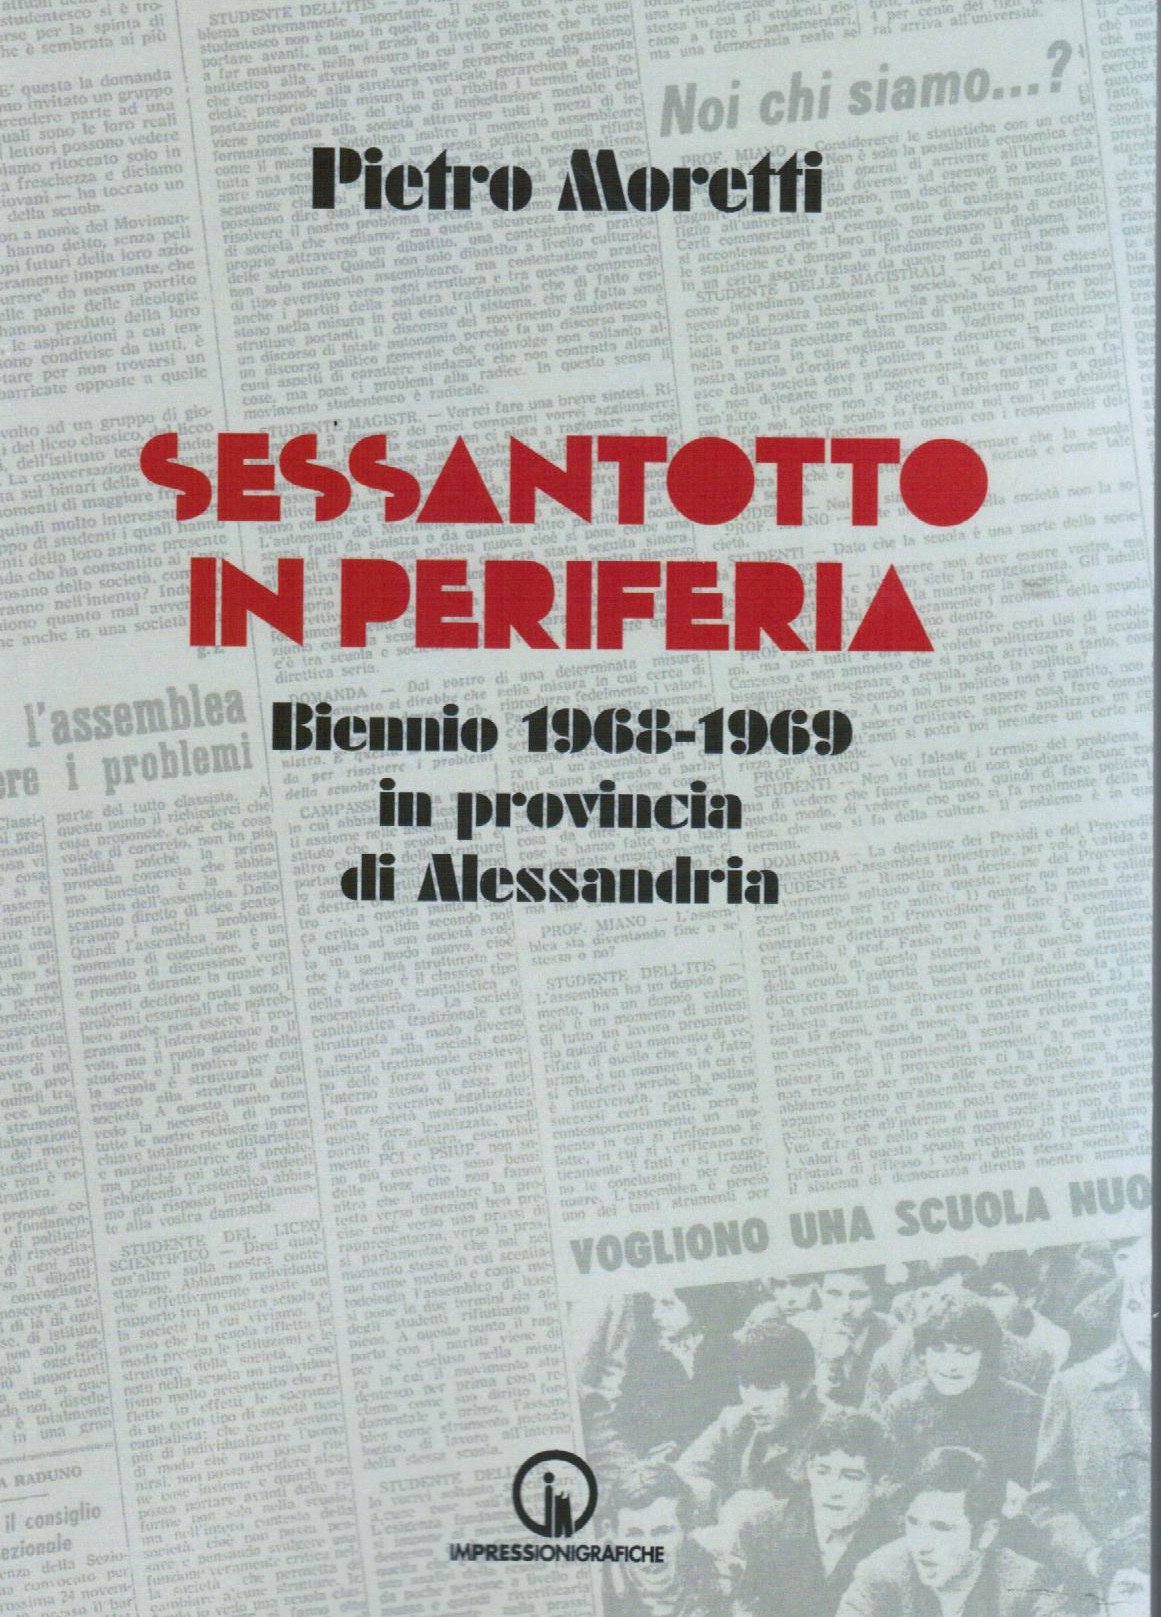 Il Sessantotto in periferia: a Casale la presentazione del libro che racconta il movimento nell’alessandrino